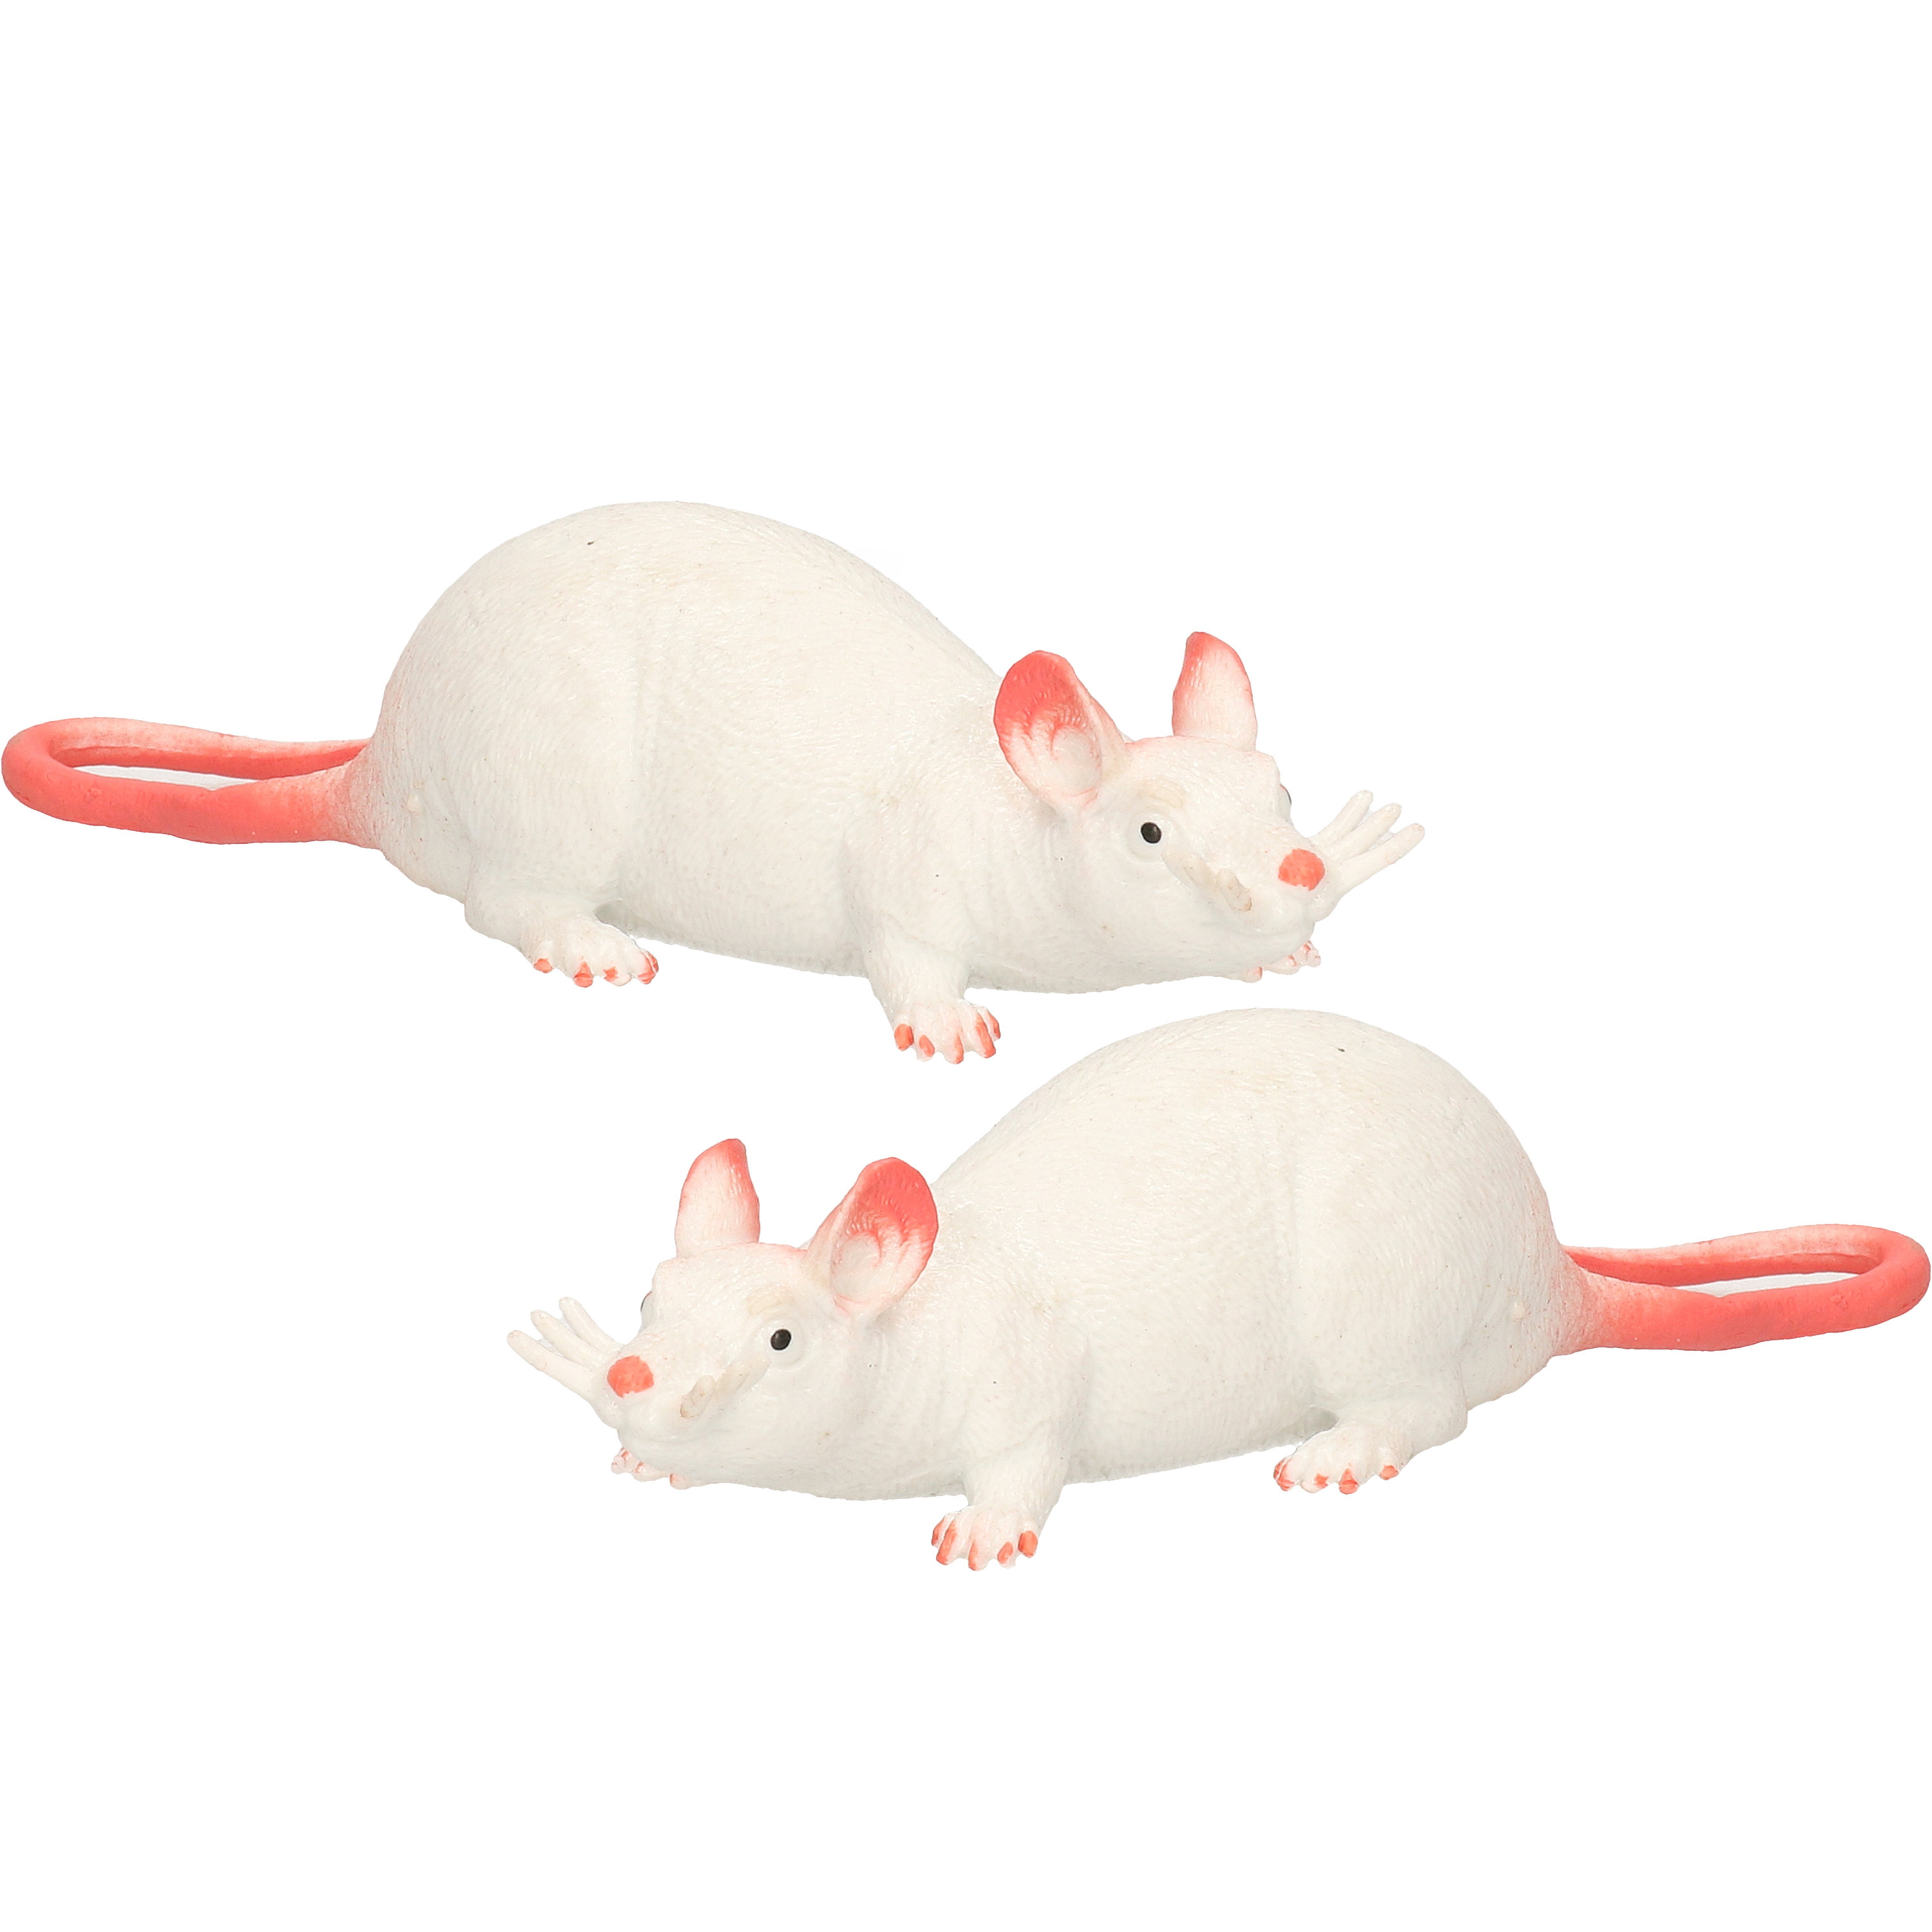 Afbeelding 2x Speelgoed ratten 28 cm door Animals Giftshop